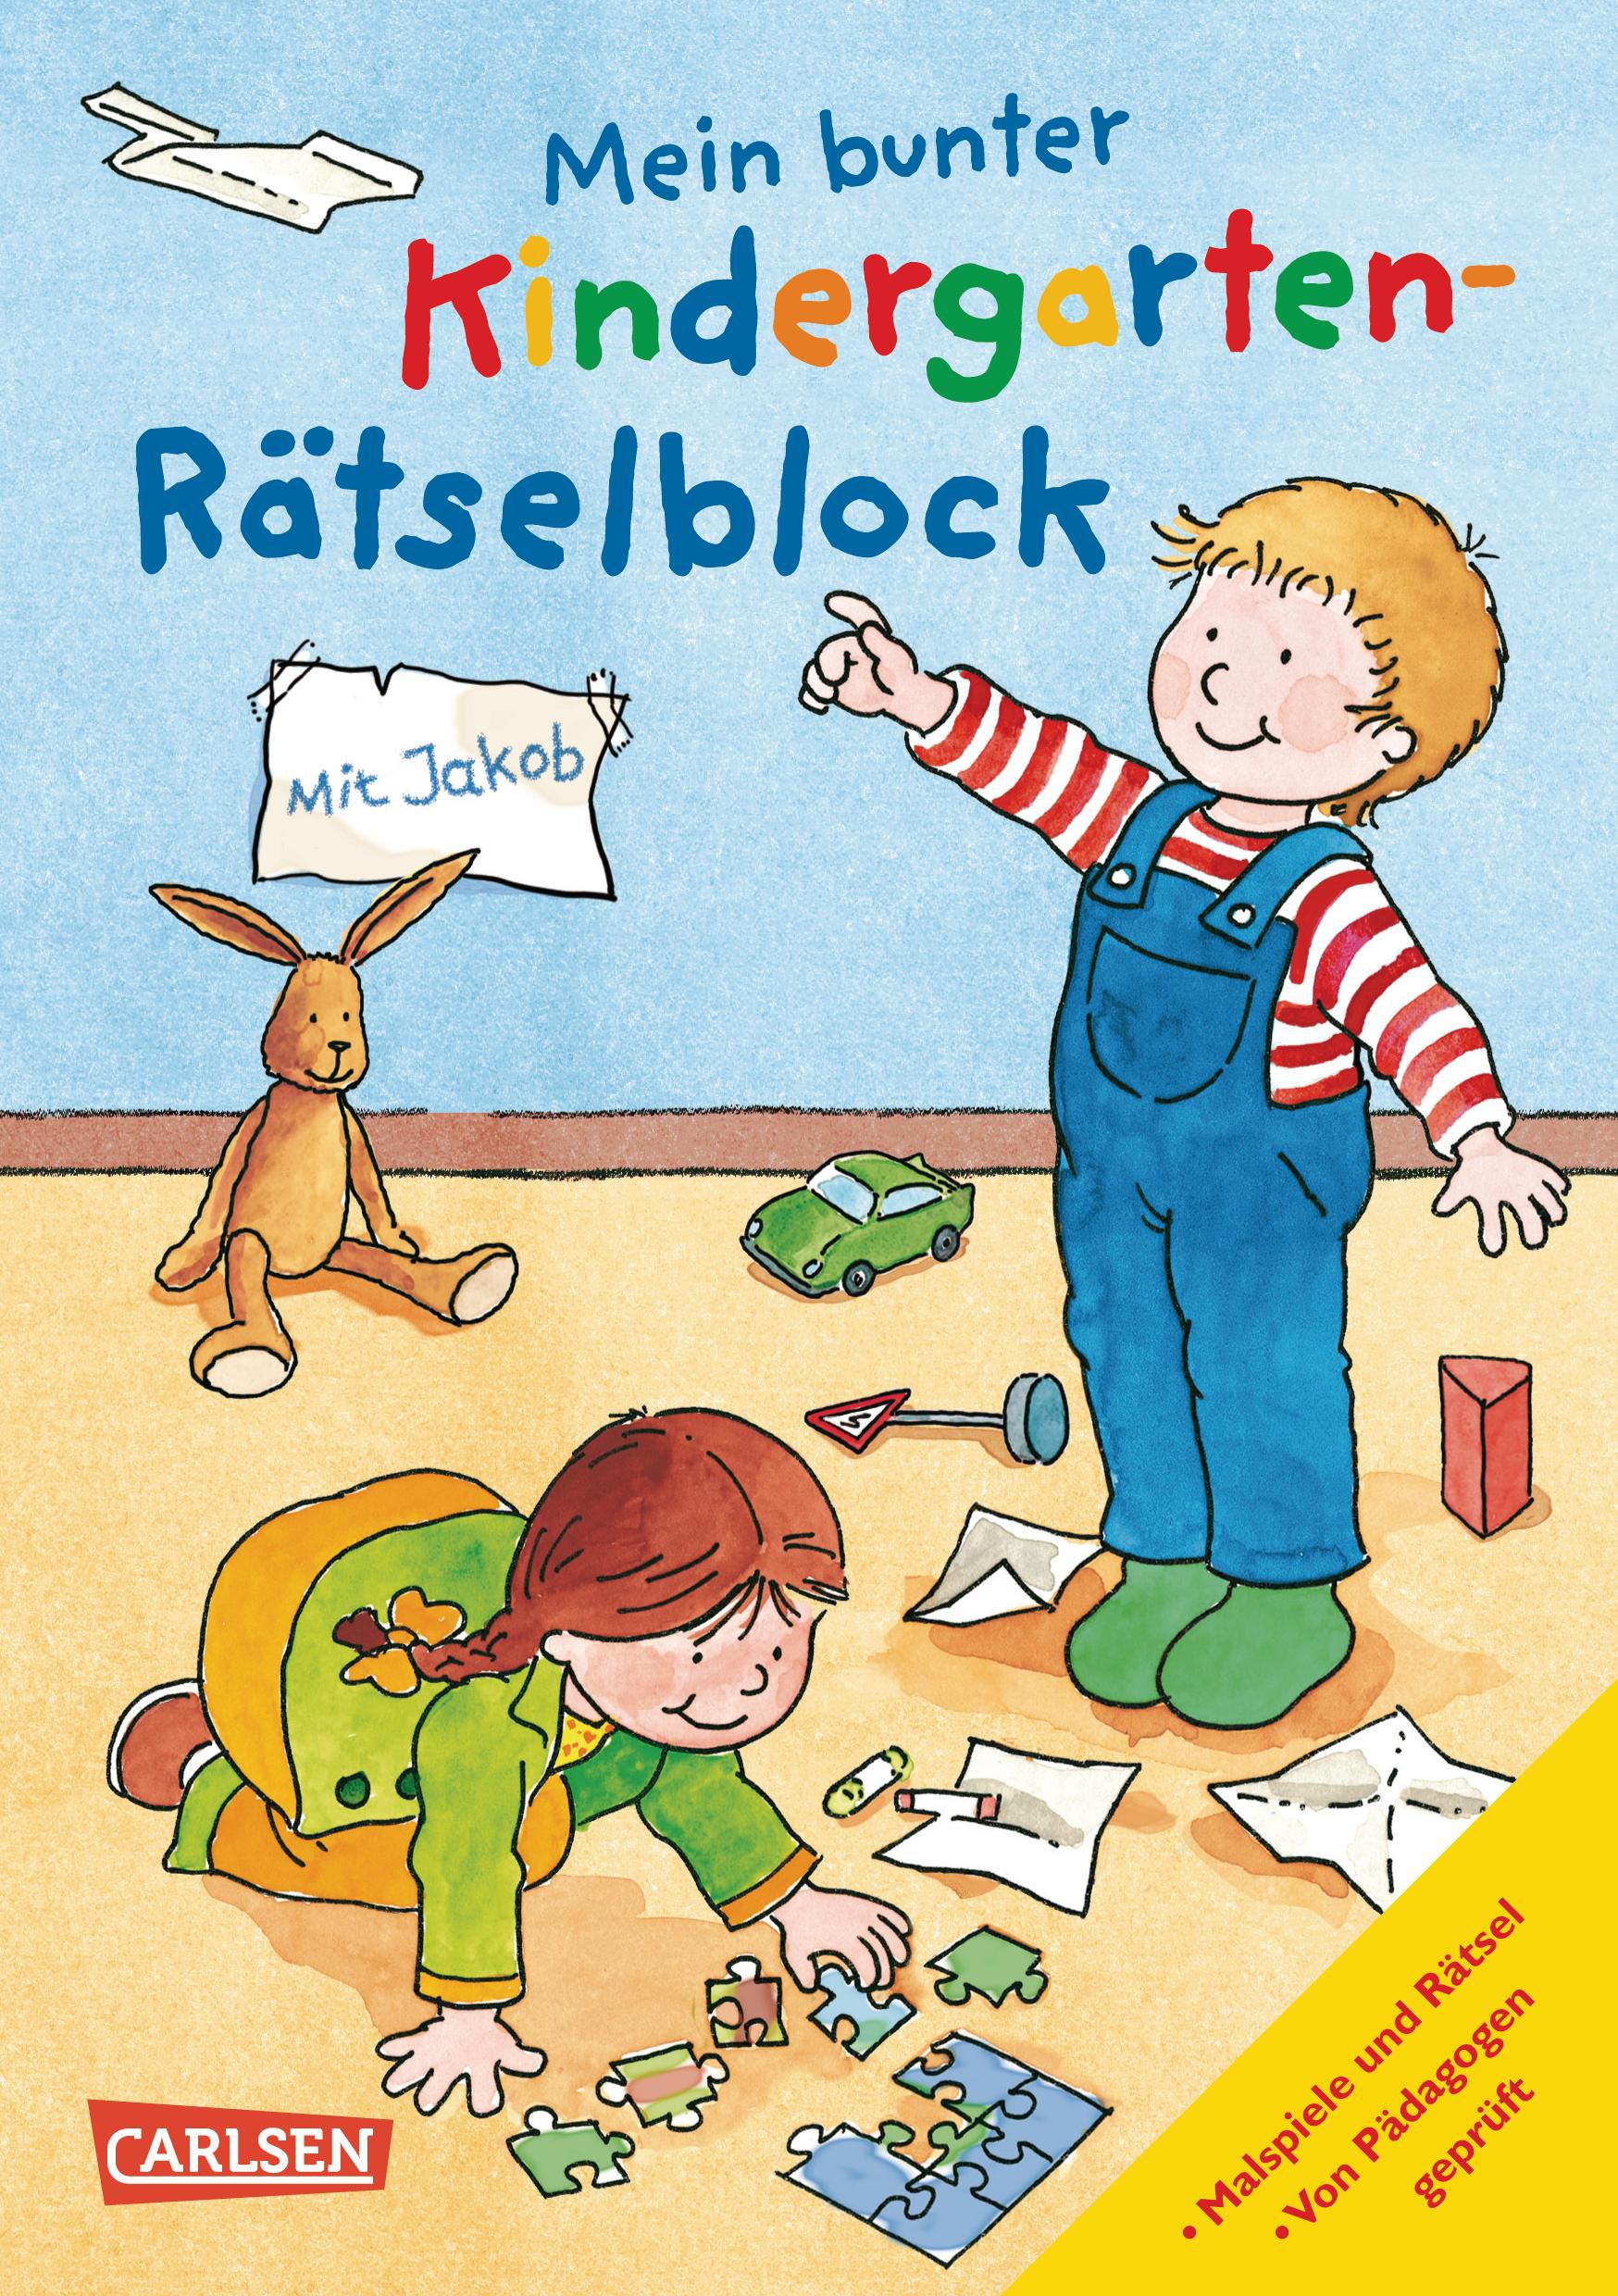 Ulrich Velte; Hanna Sörensen; Laura Leintz / Mein bunter Kindergarten-Rätselbloc - Bild 1 von 1